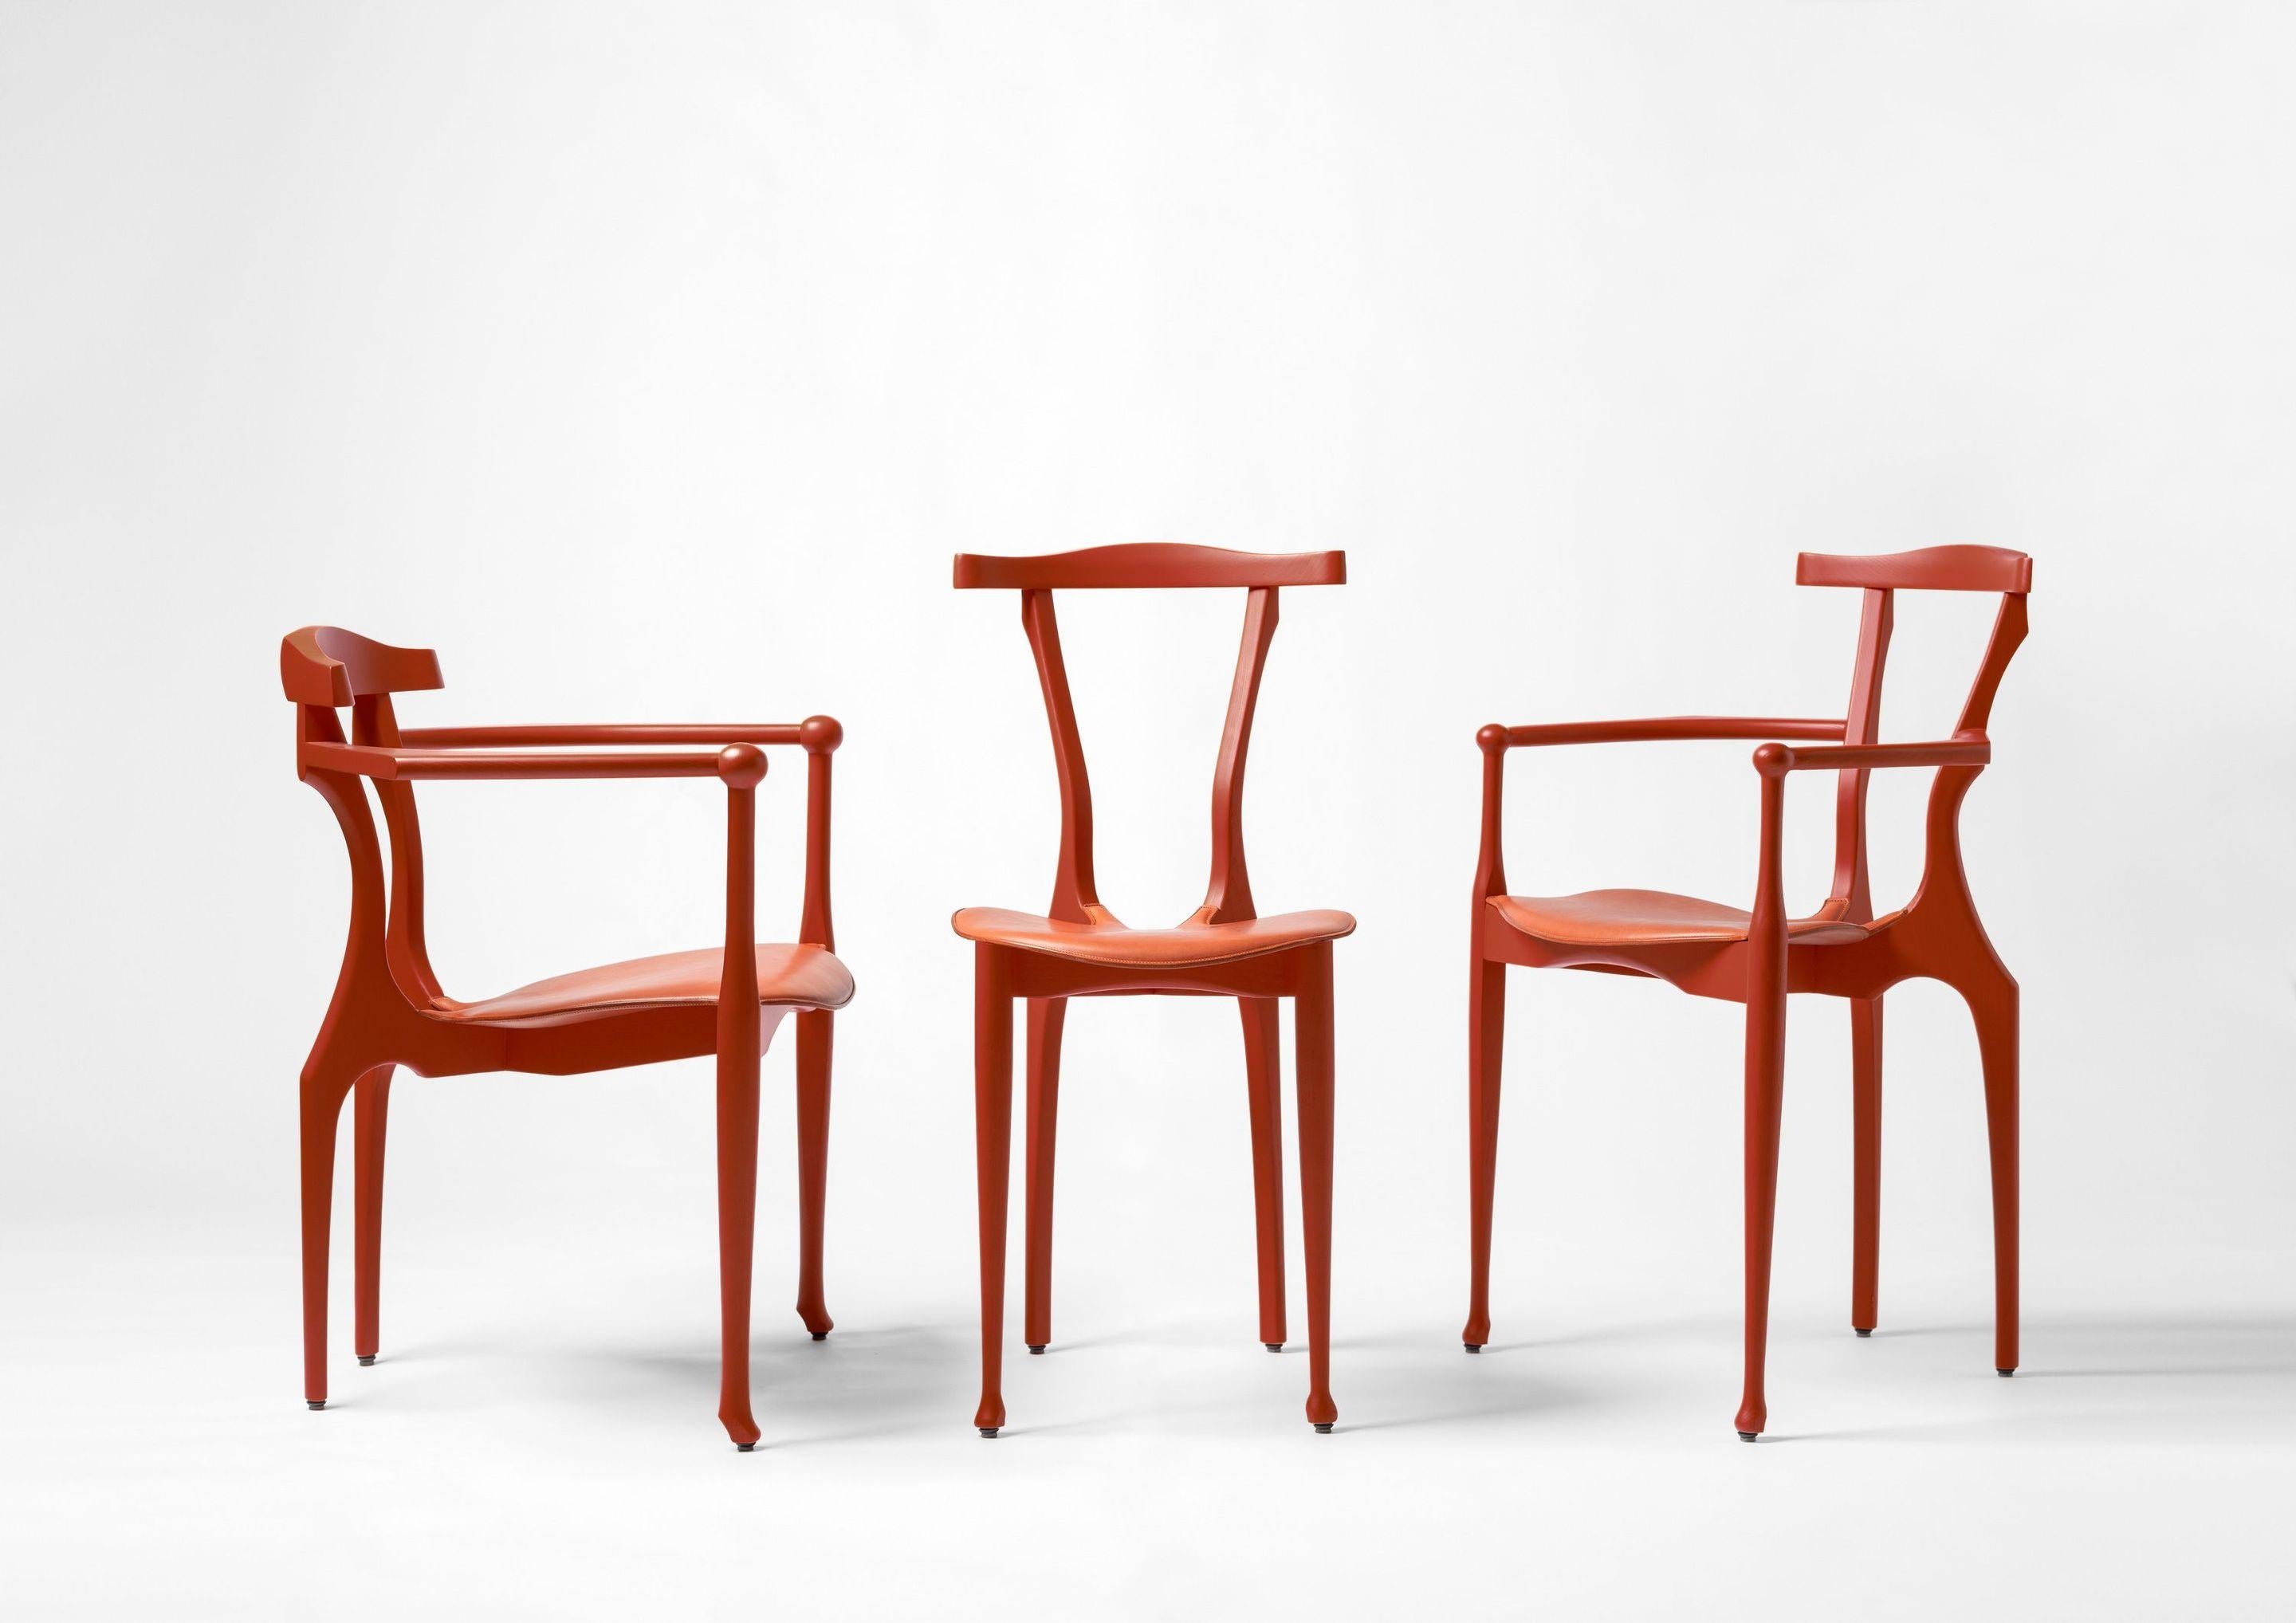 Inspiriert von Enzo Mari und seinem Tonietta-Stuhl, hat Oscar Tusquets einen 
Anpassung seines Gaulino: Die Gaulinetta. Die Reduktion der Gaulino-Armlehnen durch Tusquets ergibt ein schlankes Modell, das ideal ist  für das Essen in kleineren Räumen.